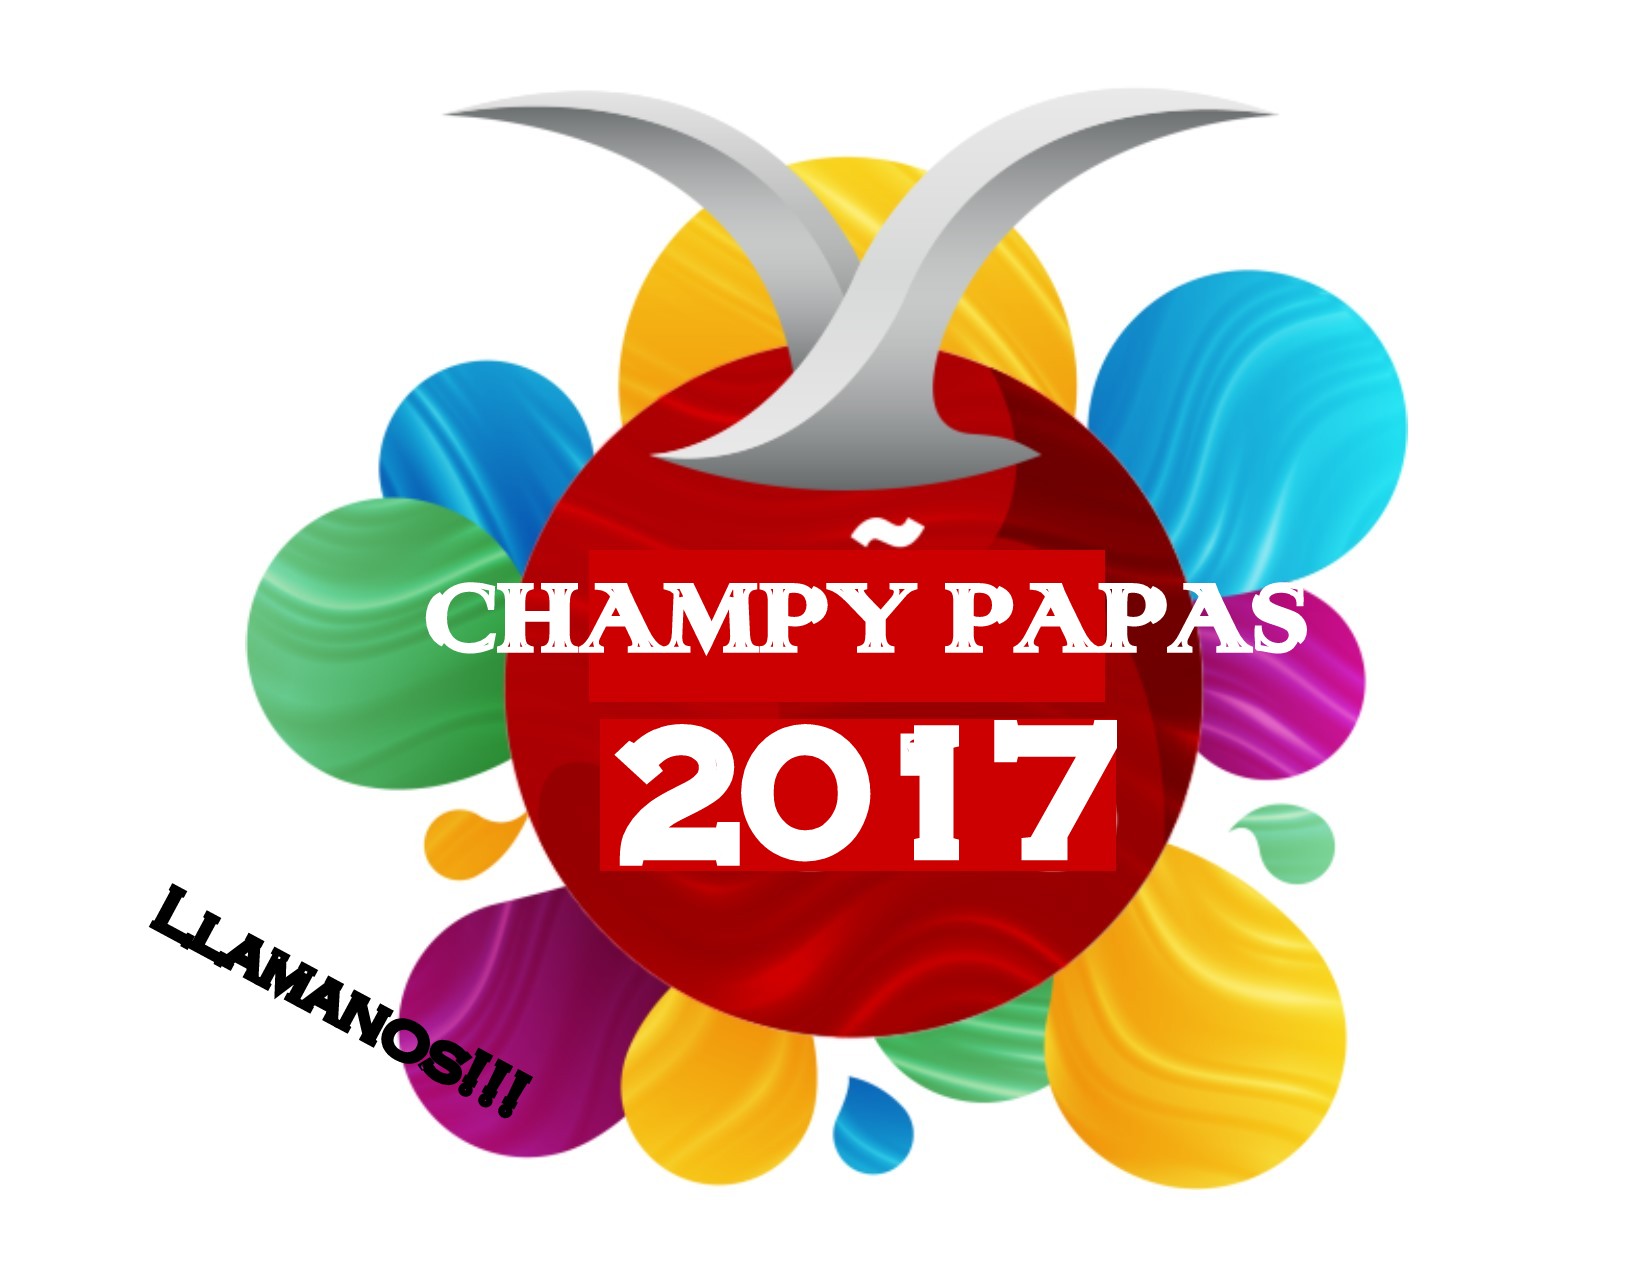 Champy Papas Esteban